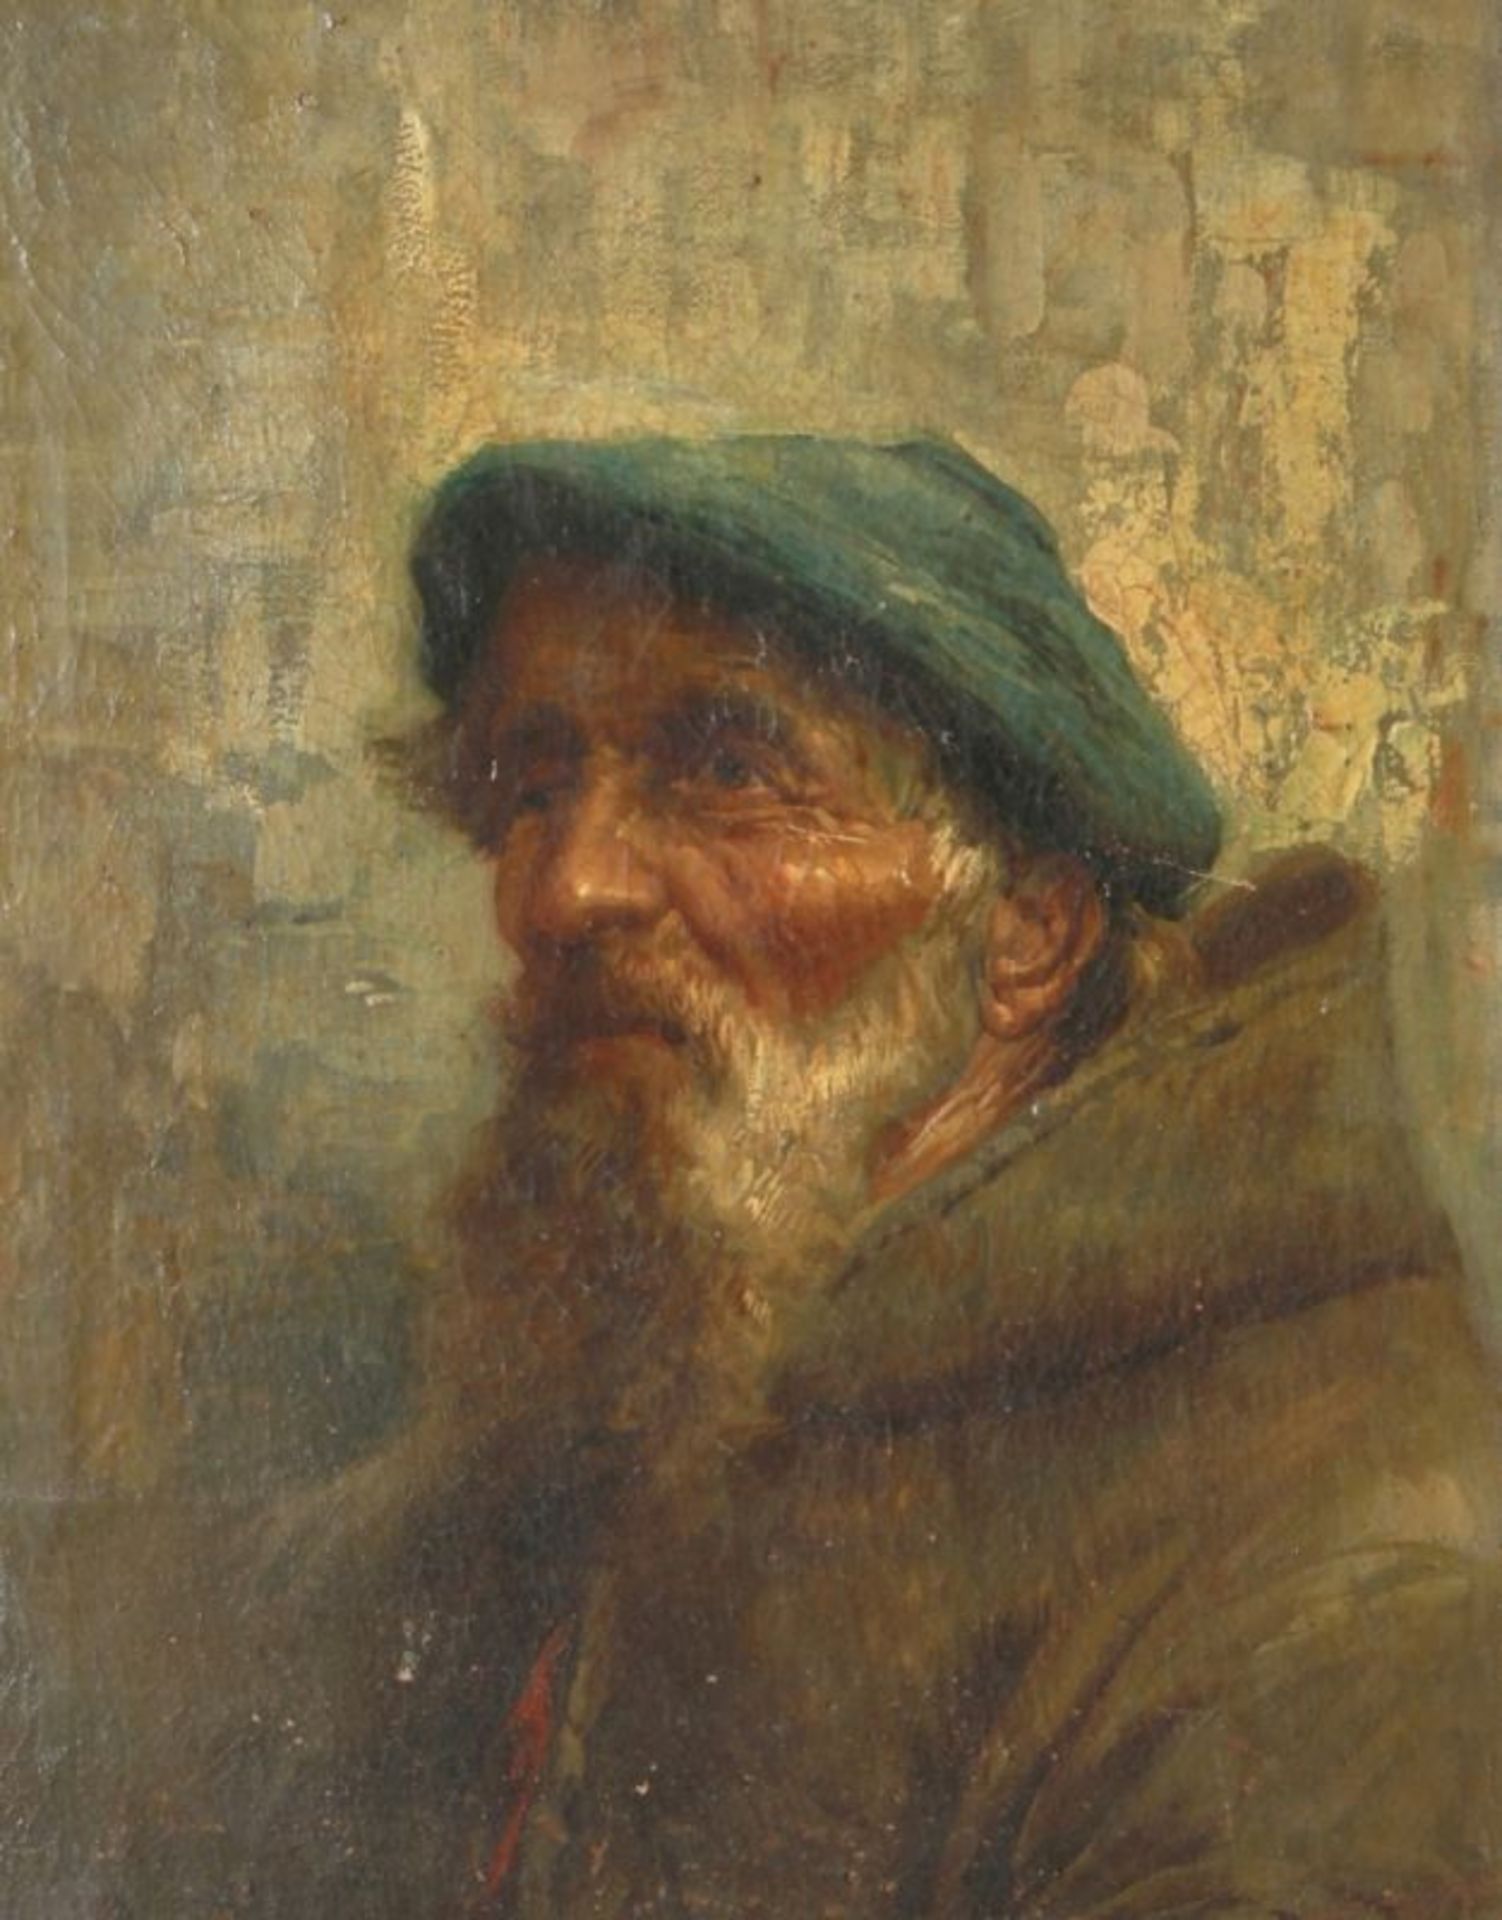 Anonymer Maler, 19./20. Jh. "Portrait eines alten Mannes", Öl/Lw., 30,5 x 23 cm